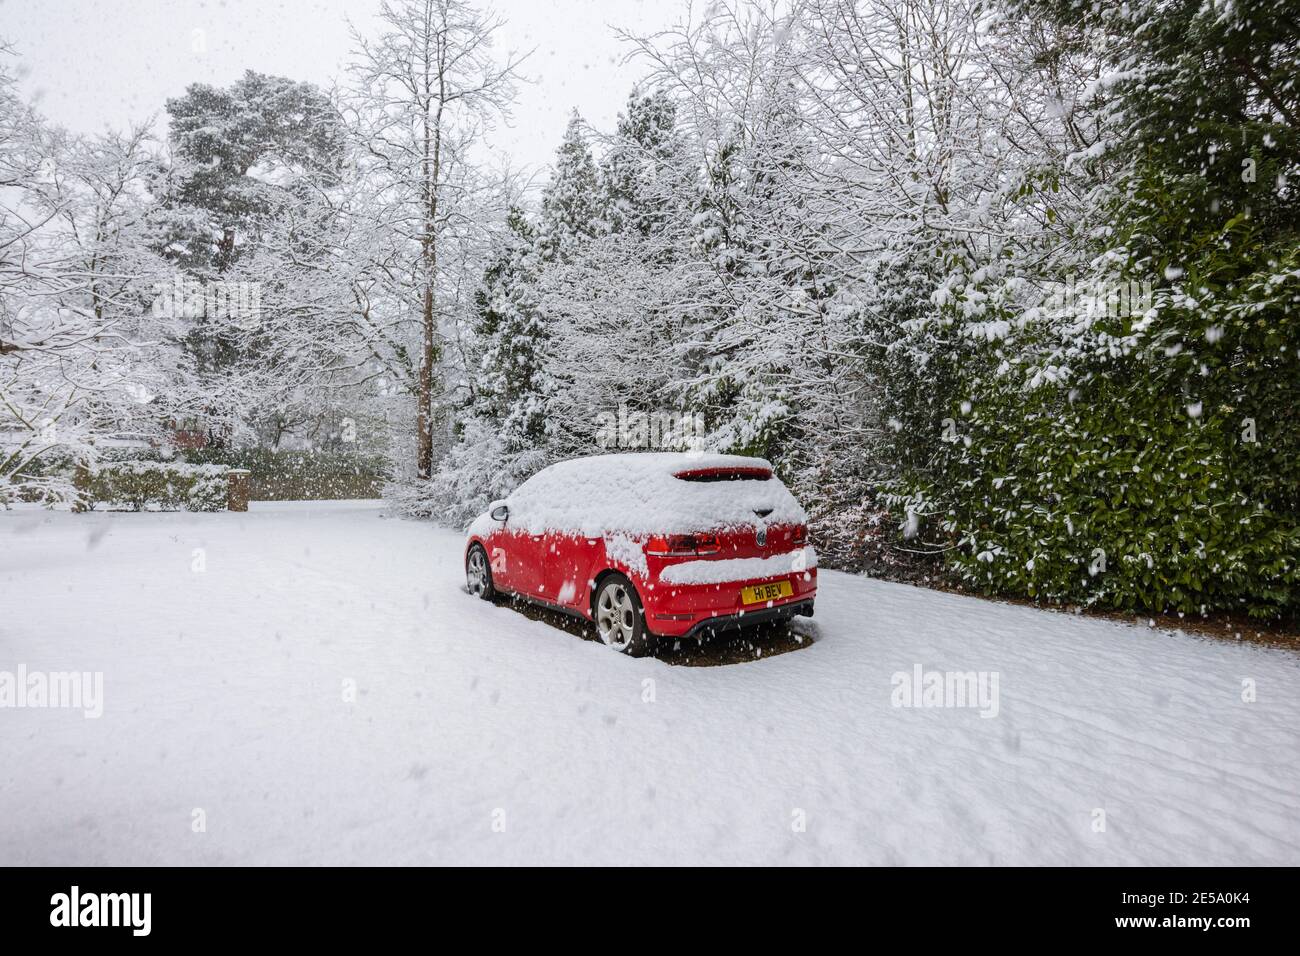 Une voiture rouge Volkswagen Golf GTI garée dans un périurbain couvert de neige pendant une forte chute de neige en hiver : Woking, Surrey, sud-est de l'Angleterre Banque D'Images